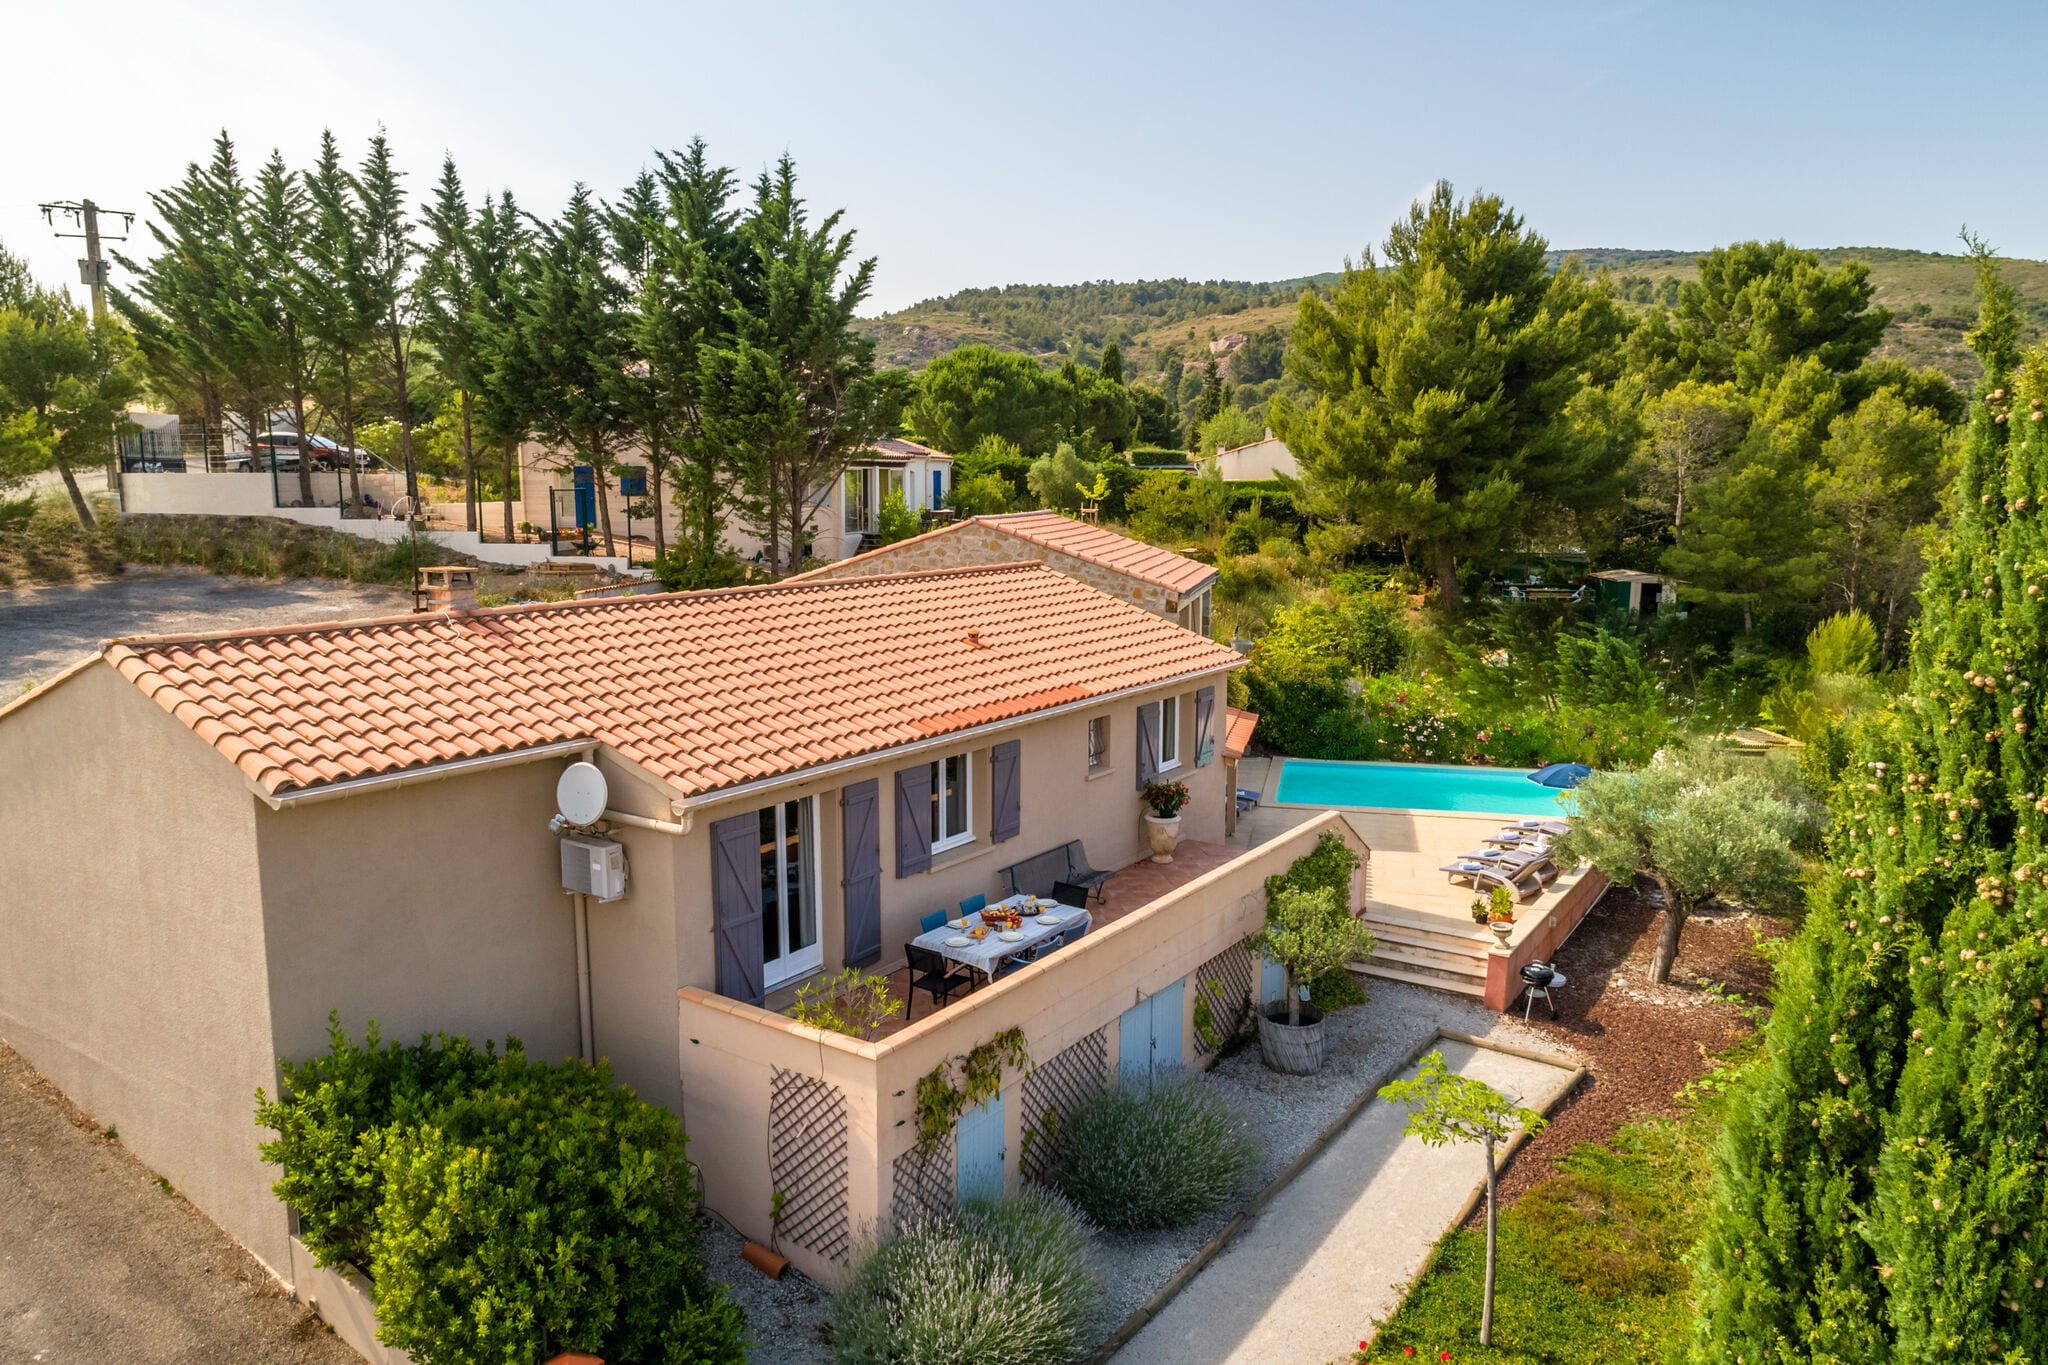 Serene vrijstaande villa in Zuid-Frankrijk met een privézwembad